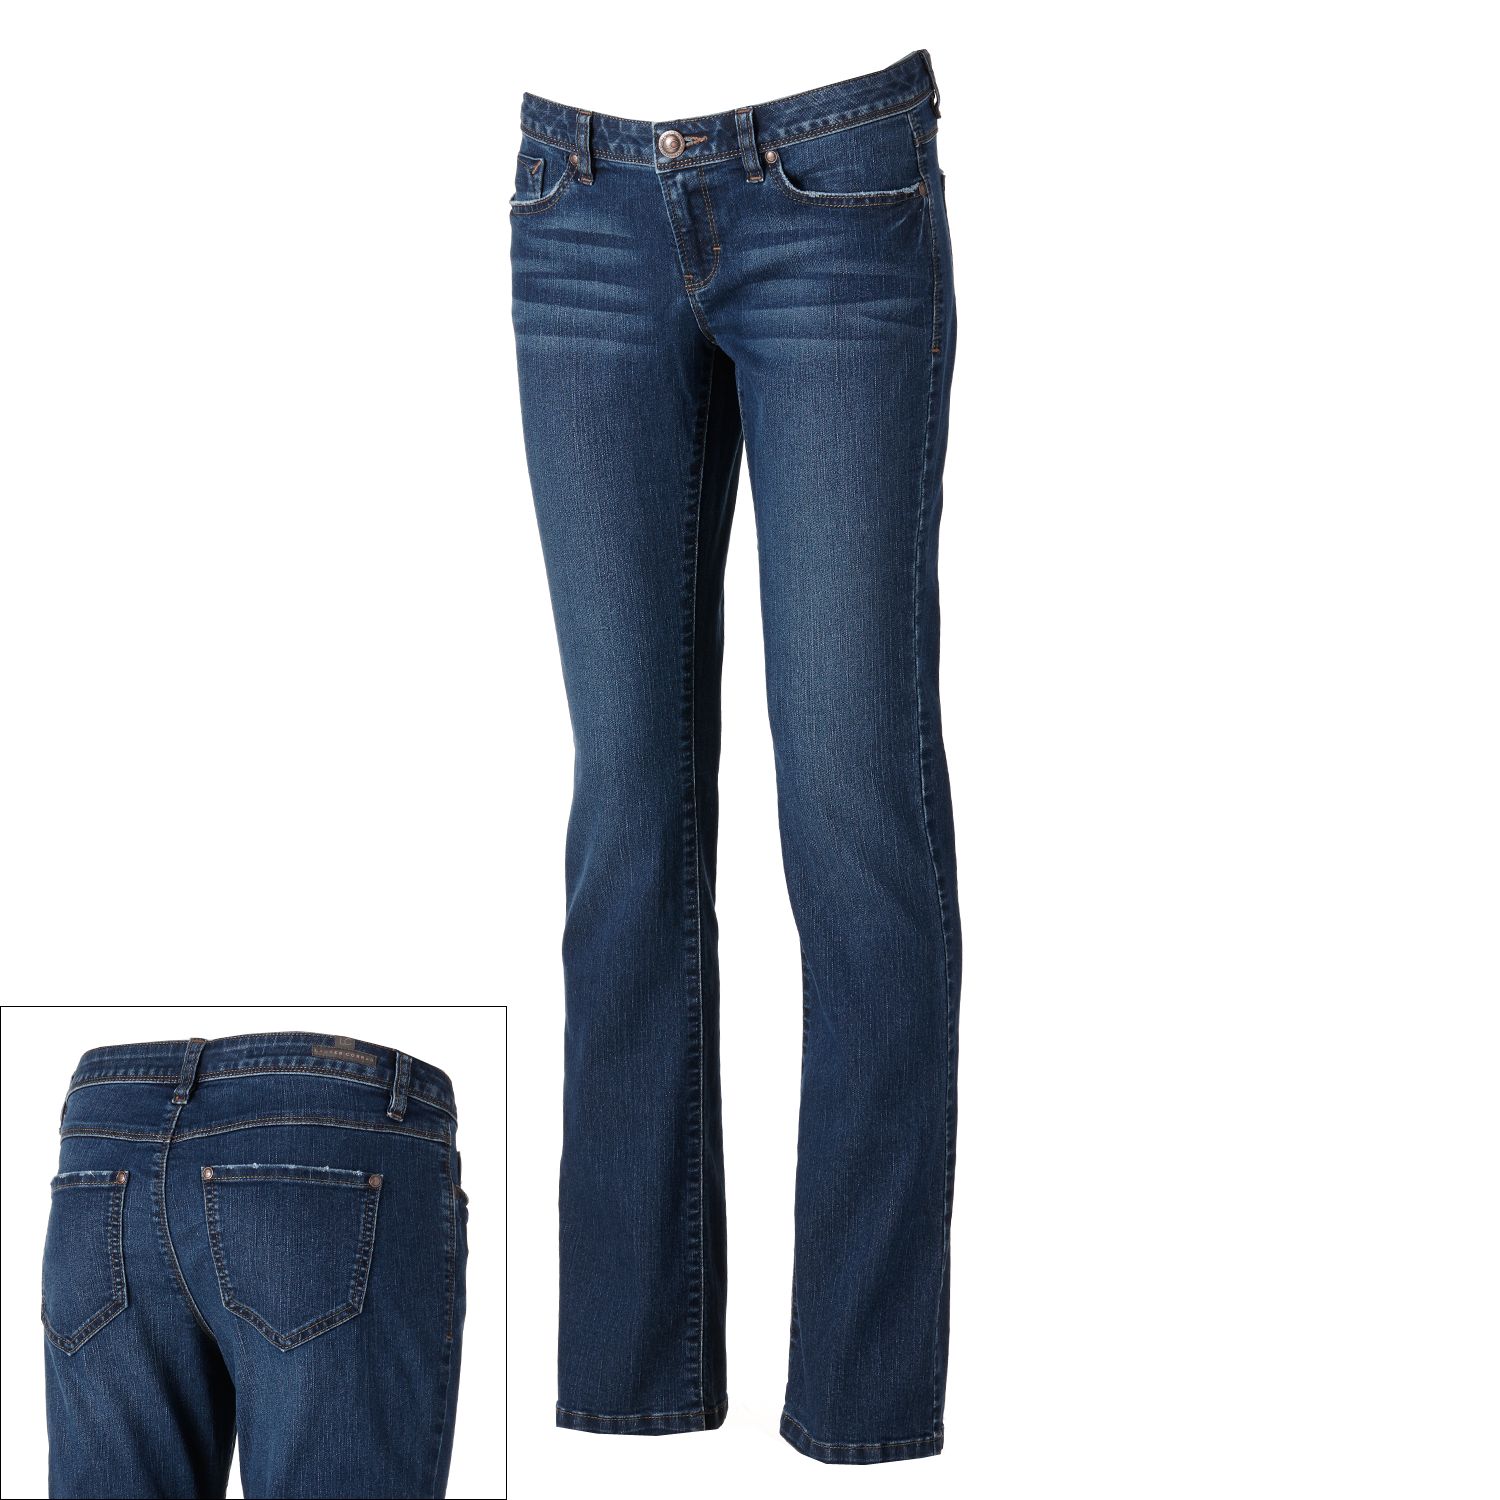 classic jeans wear